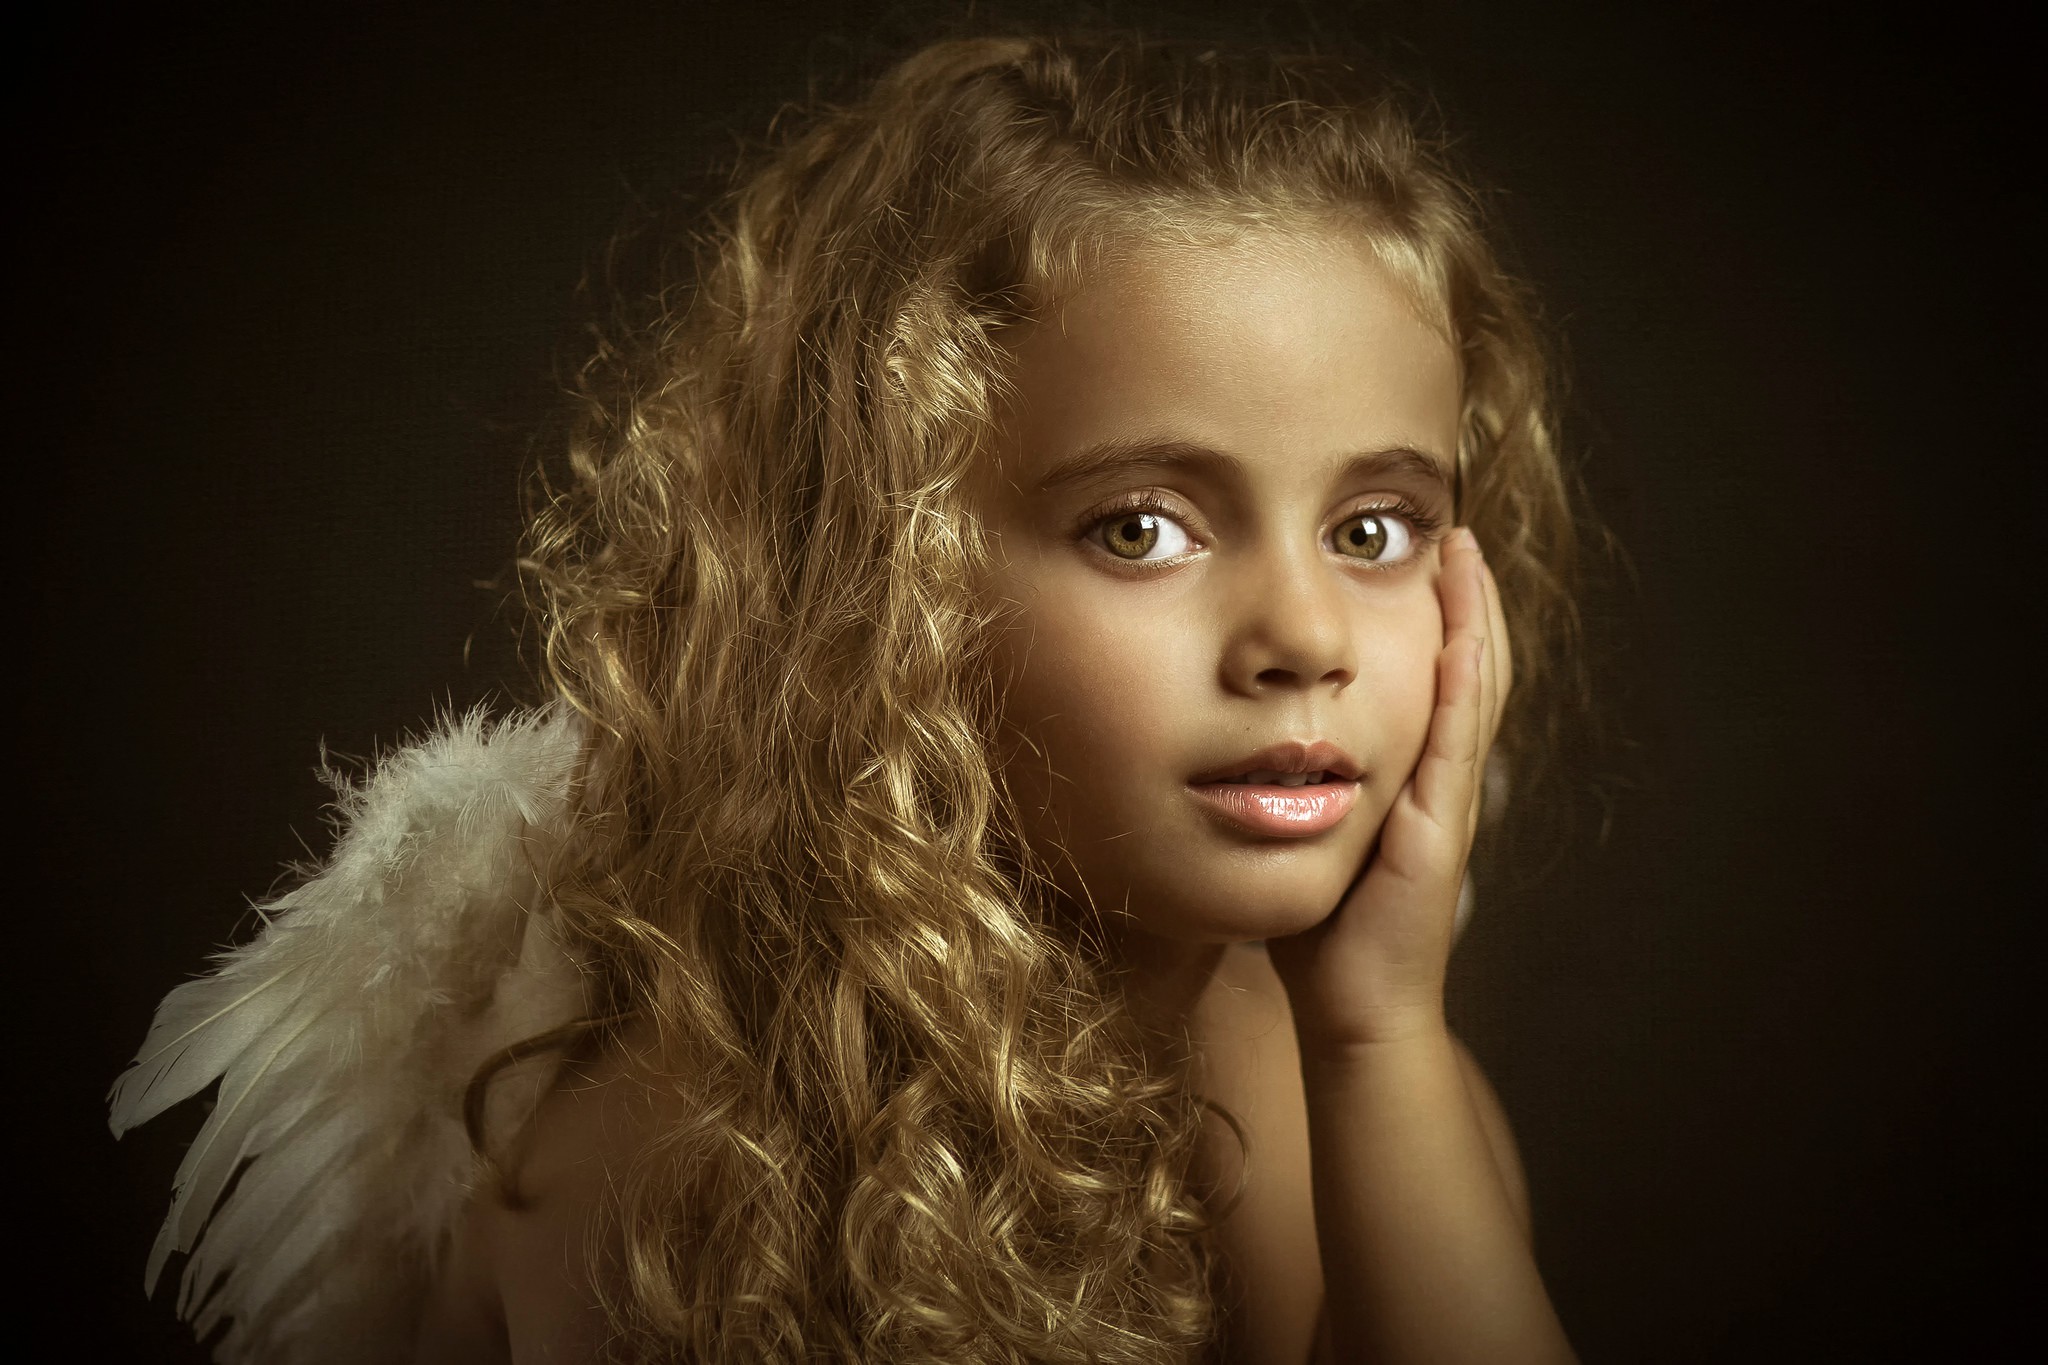 Nik little angel. Литтл Энджел. Фотопортреты детей. Портрет девочки. Детский студийный портрет.